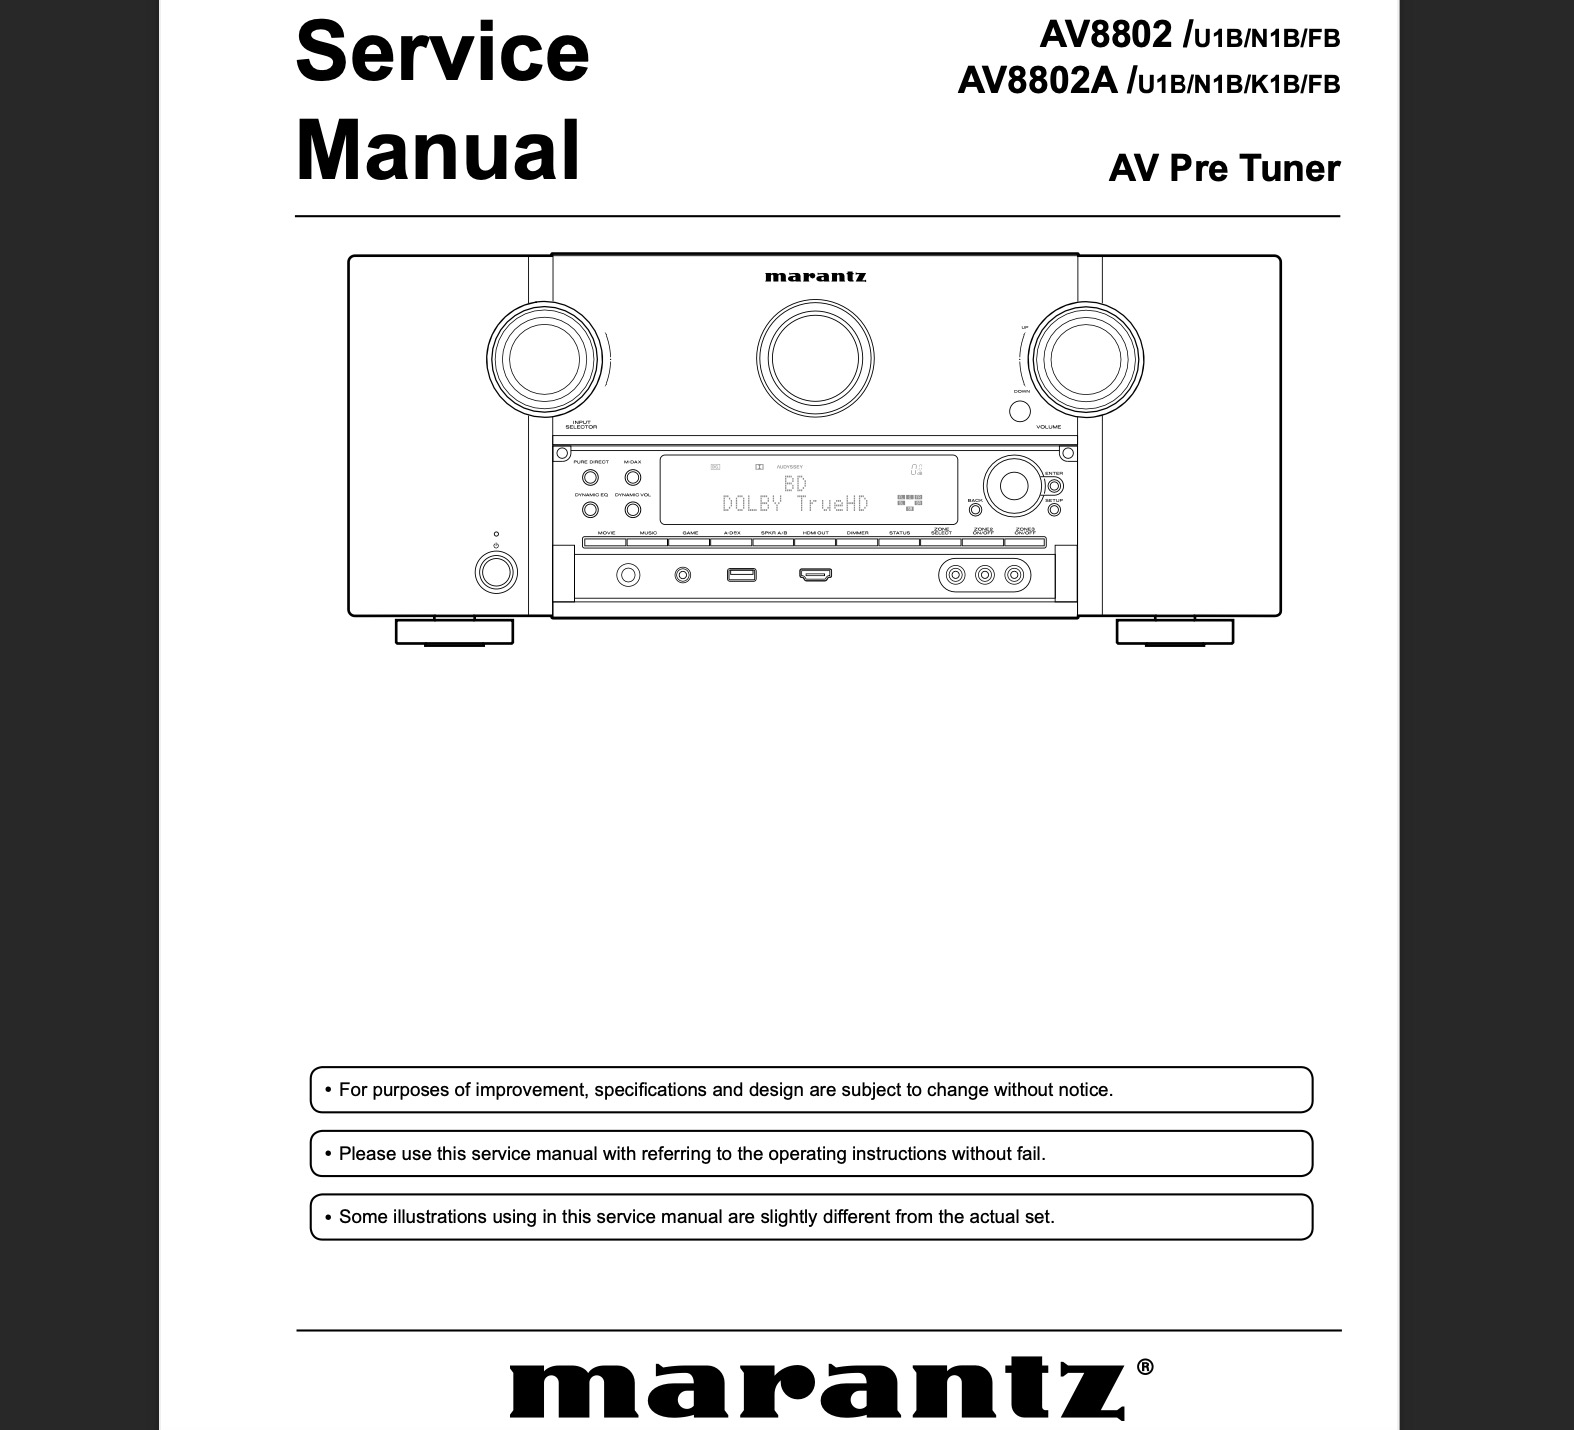 Marantz AV8802 / AV8802A AV Pre Tuner Service Manual, Exploded View, Schematic Diagram, Cirquit Board